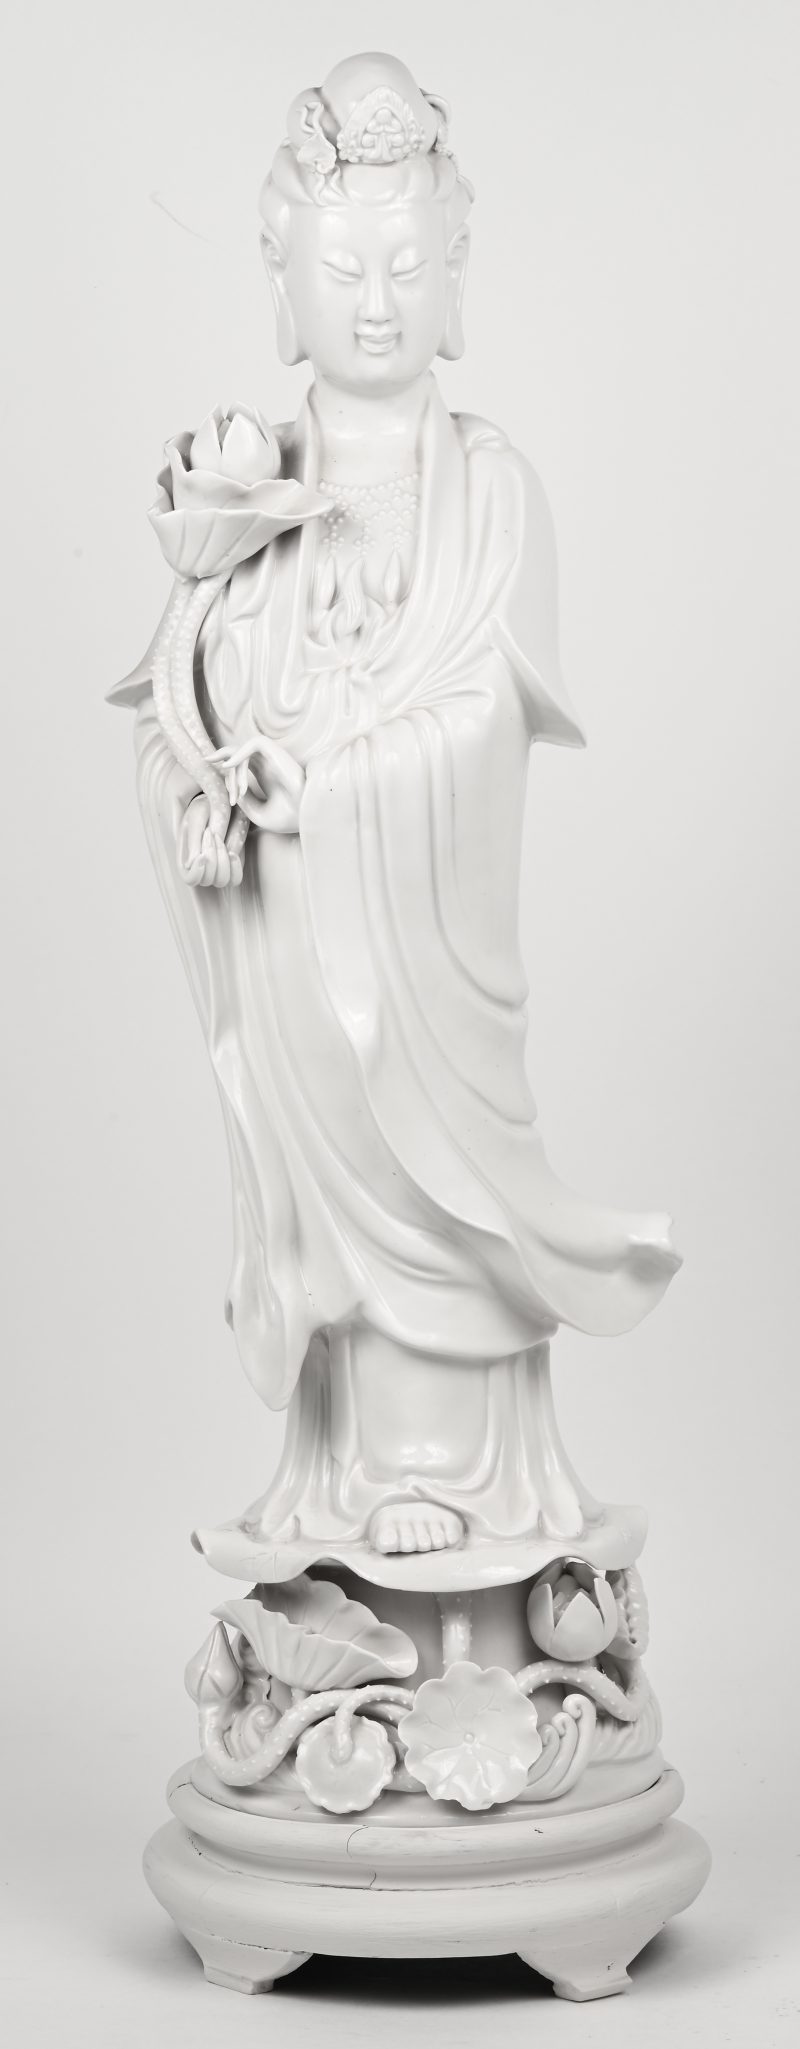 Een staande Guan Yin van monochroom wit porselein in de geest van het blanc-de-Chine.